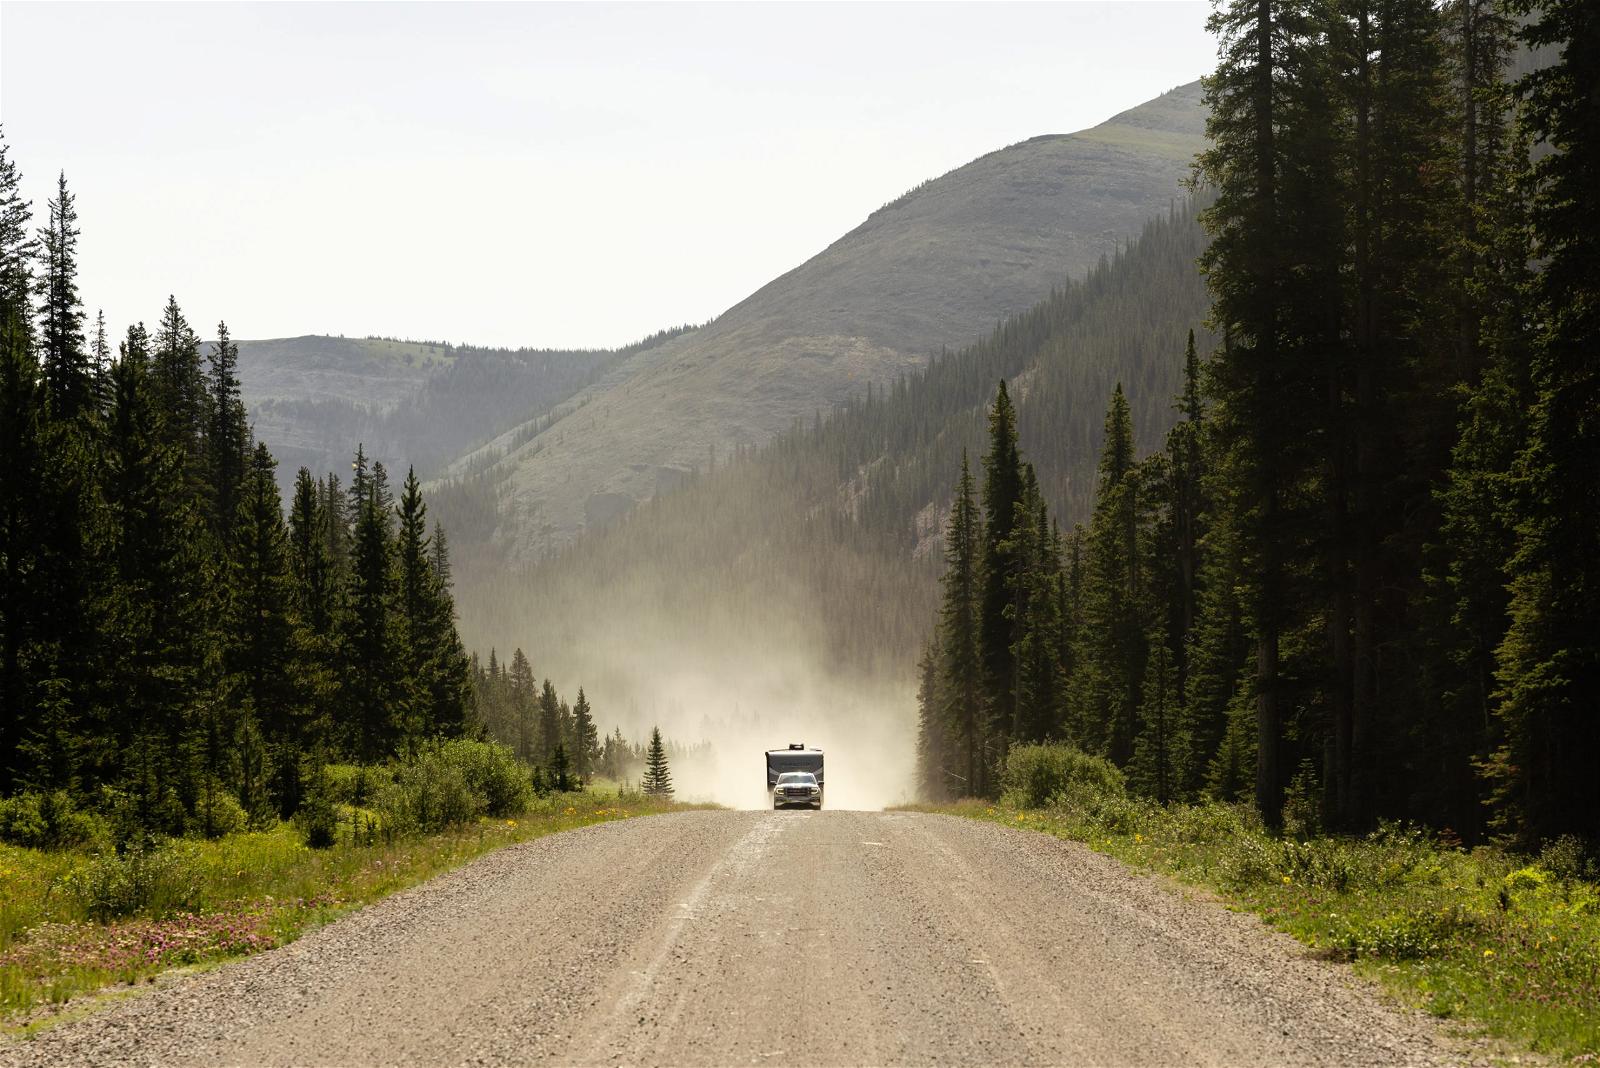 Dirt roads in Canada